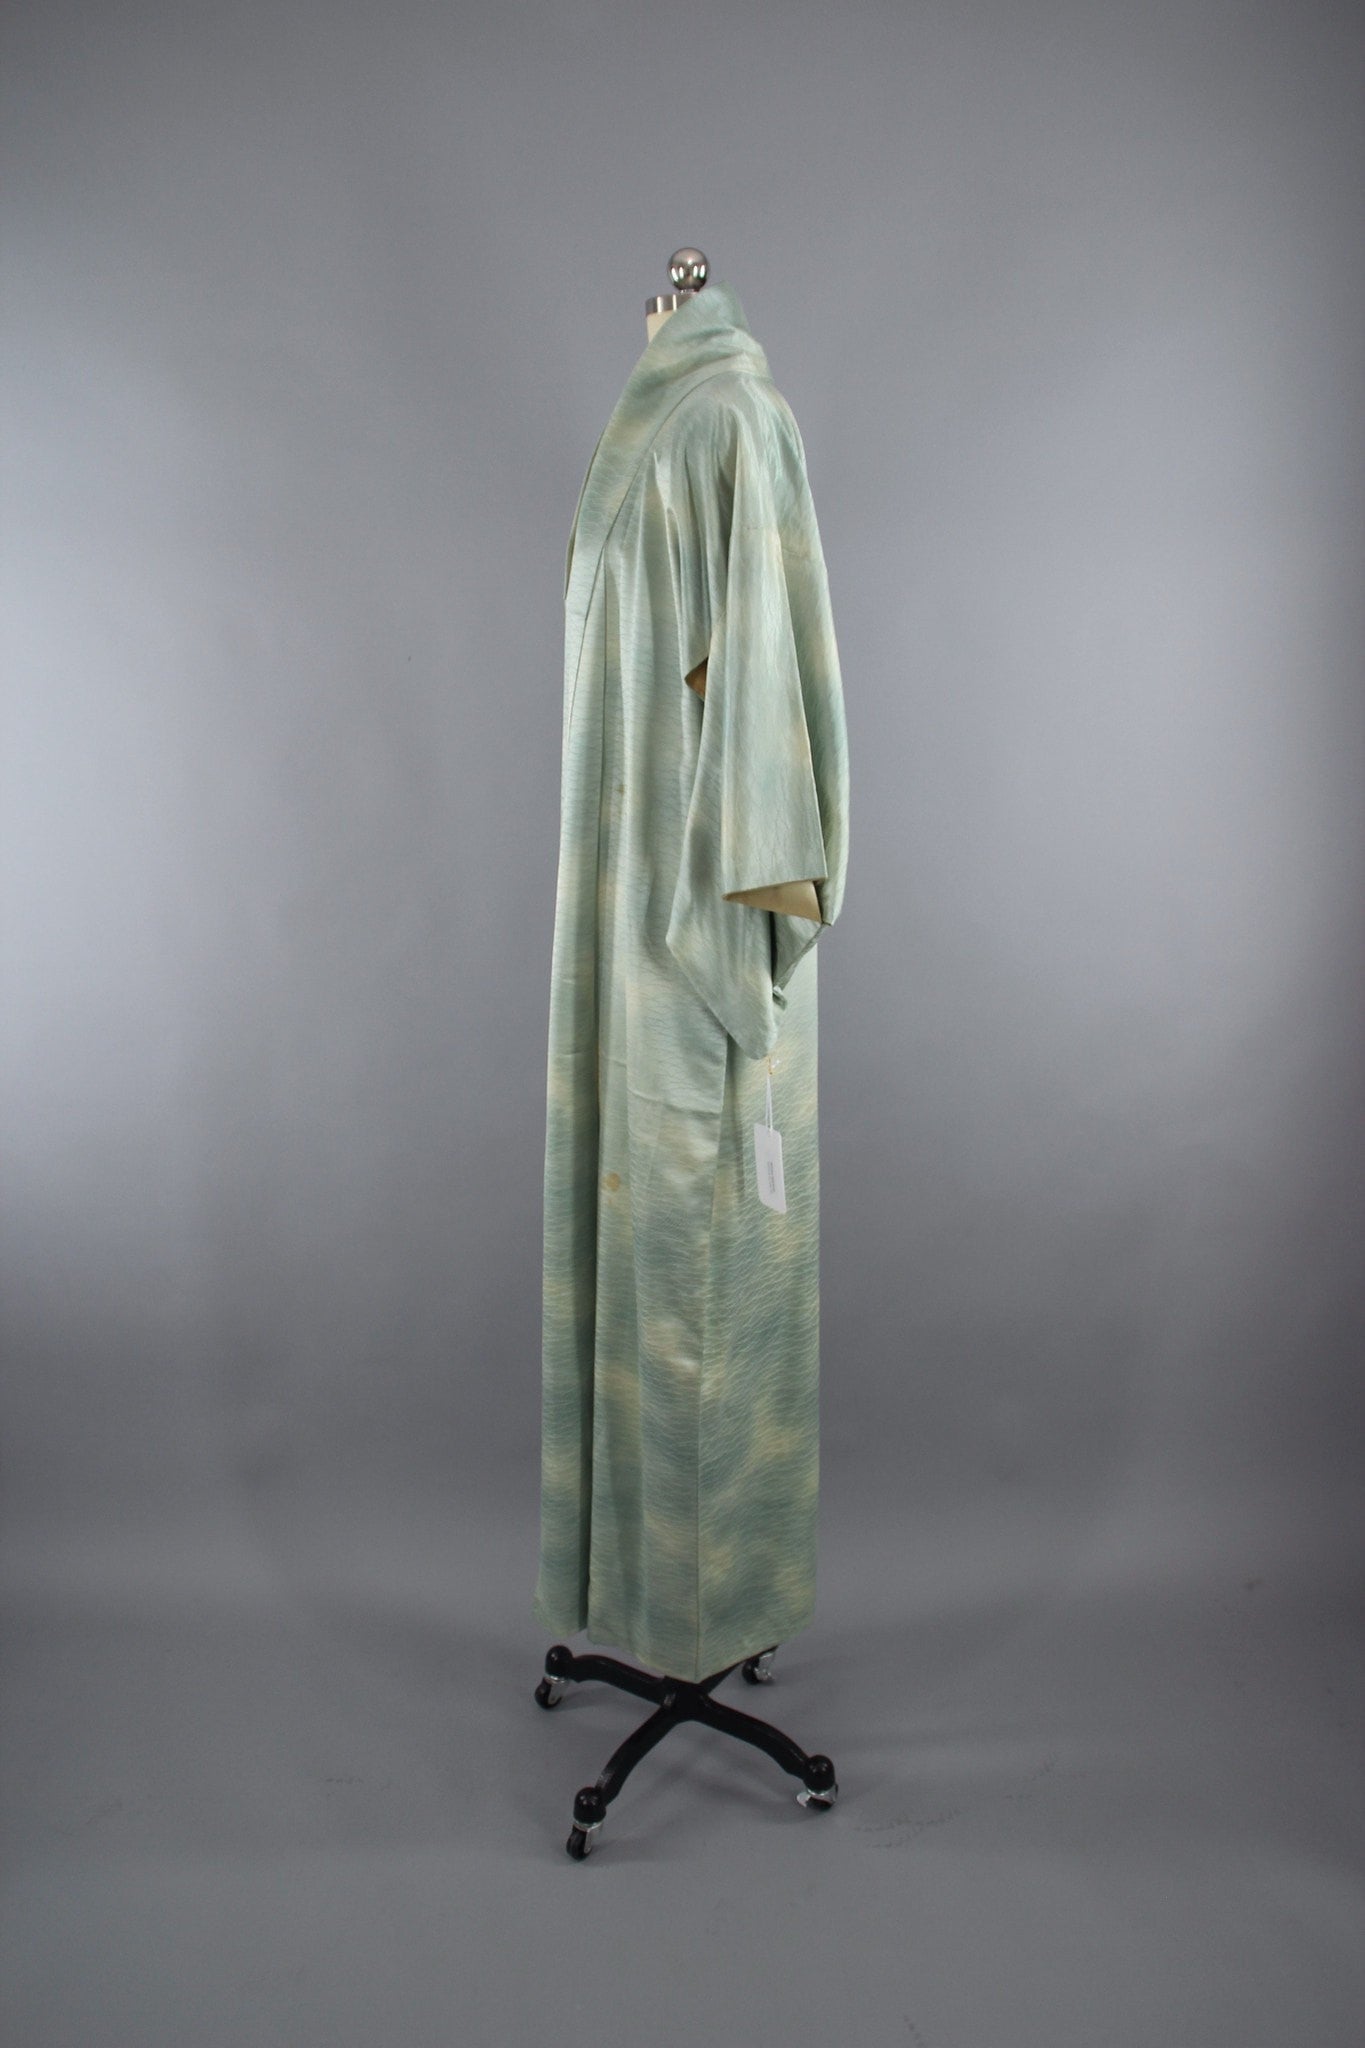 1960s Vintage Silk Kimono Robe in Sea Foam Green Ombre Satin - ThisBlueBird